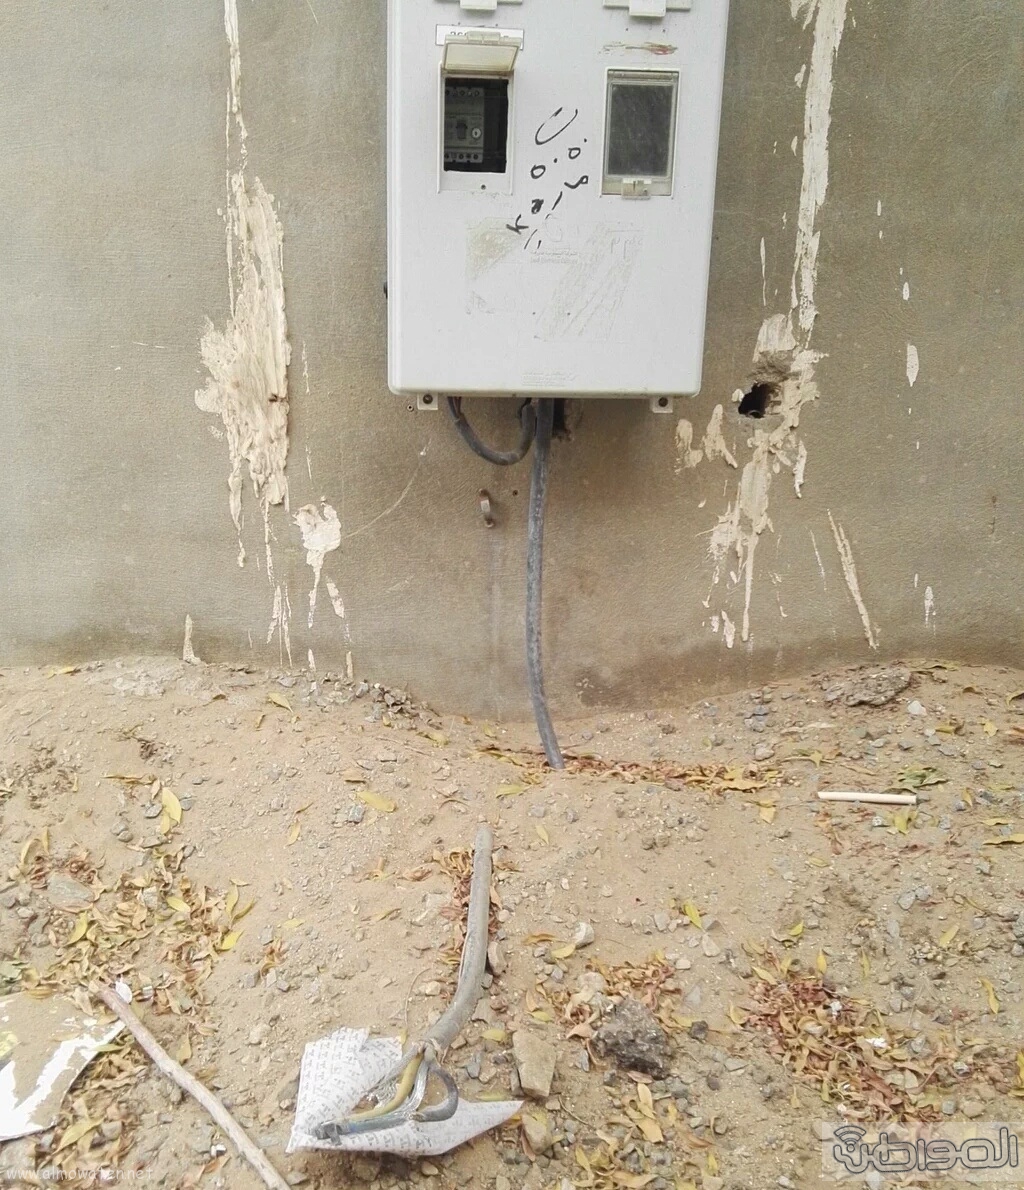 كيبل كهربائي مكشوف يهدد حياة سكان حي السامر بجدة (1)